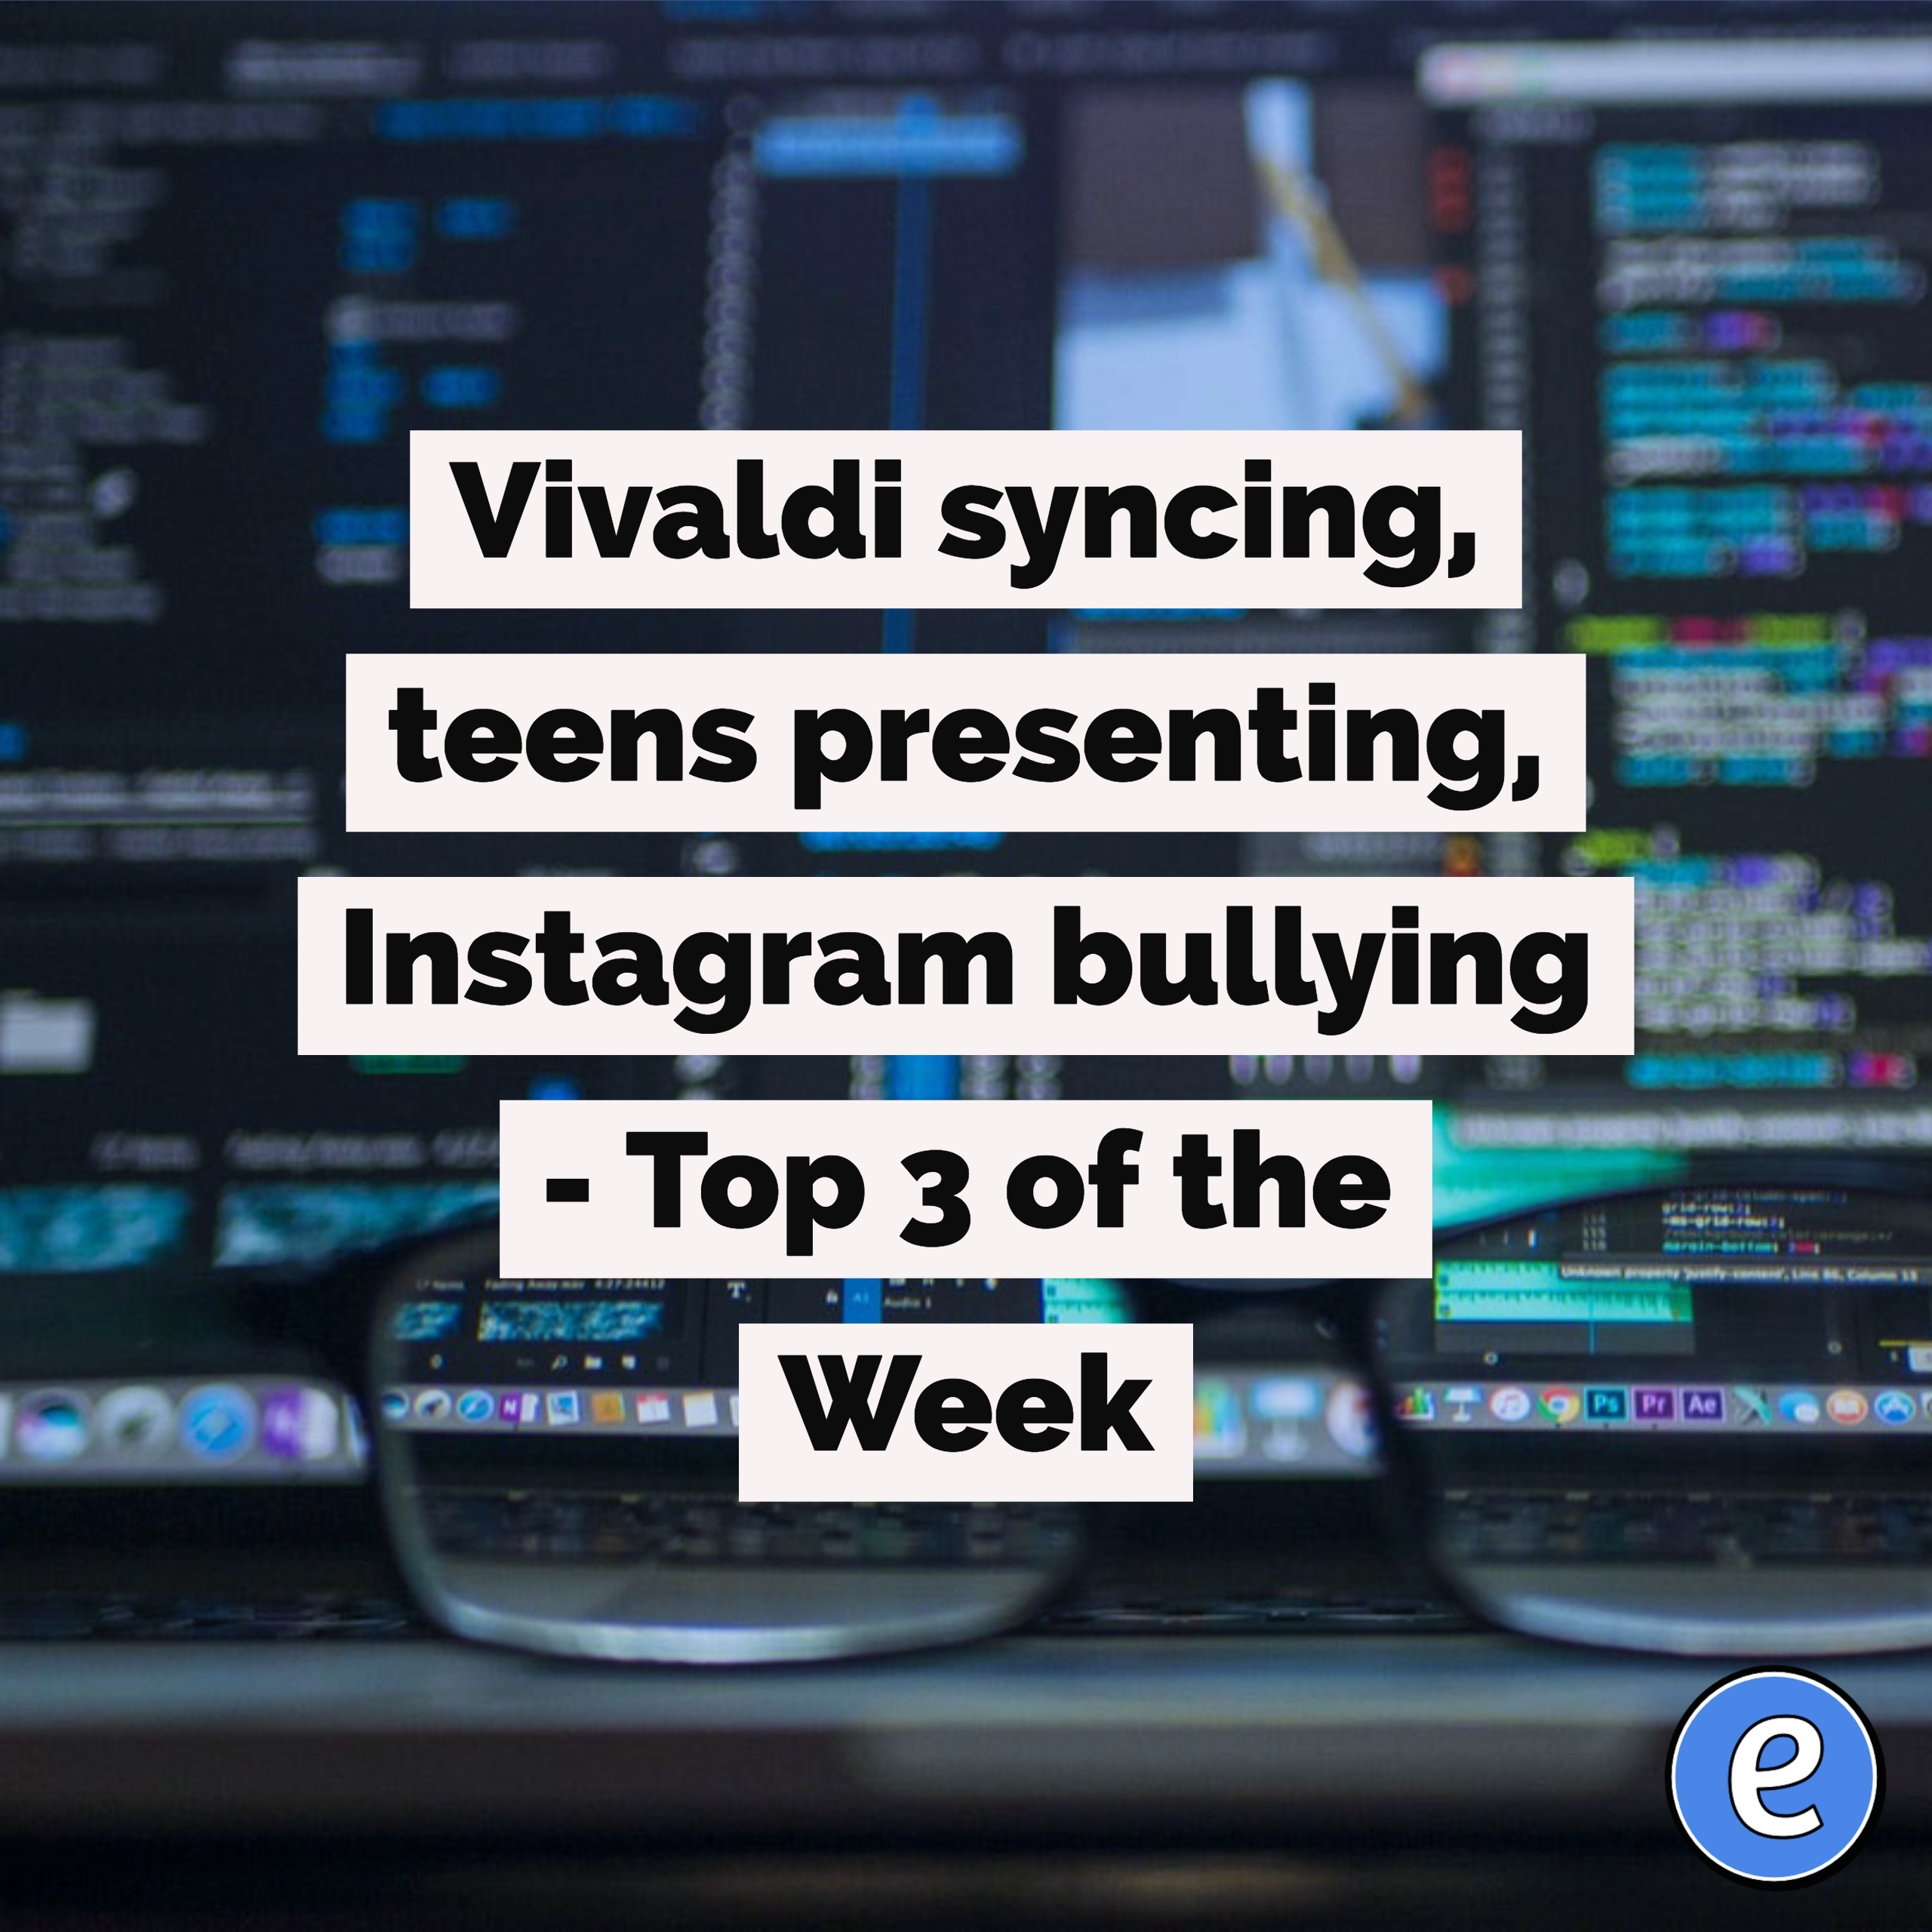 Vivaldi syncing, teens presenting, Instagram bullying – Top 3 of the Week